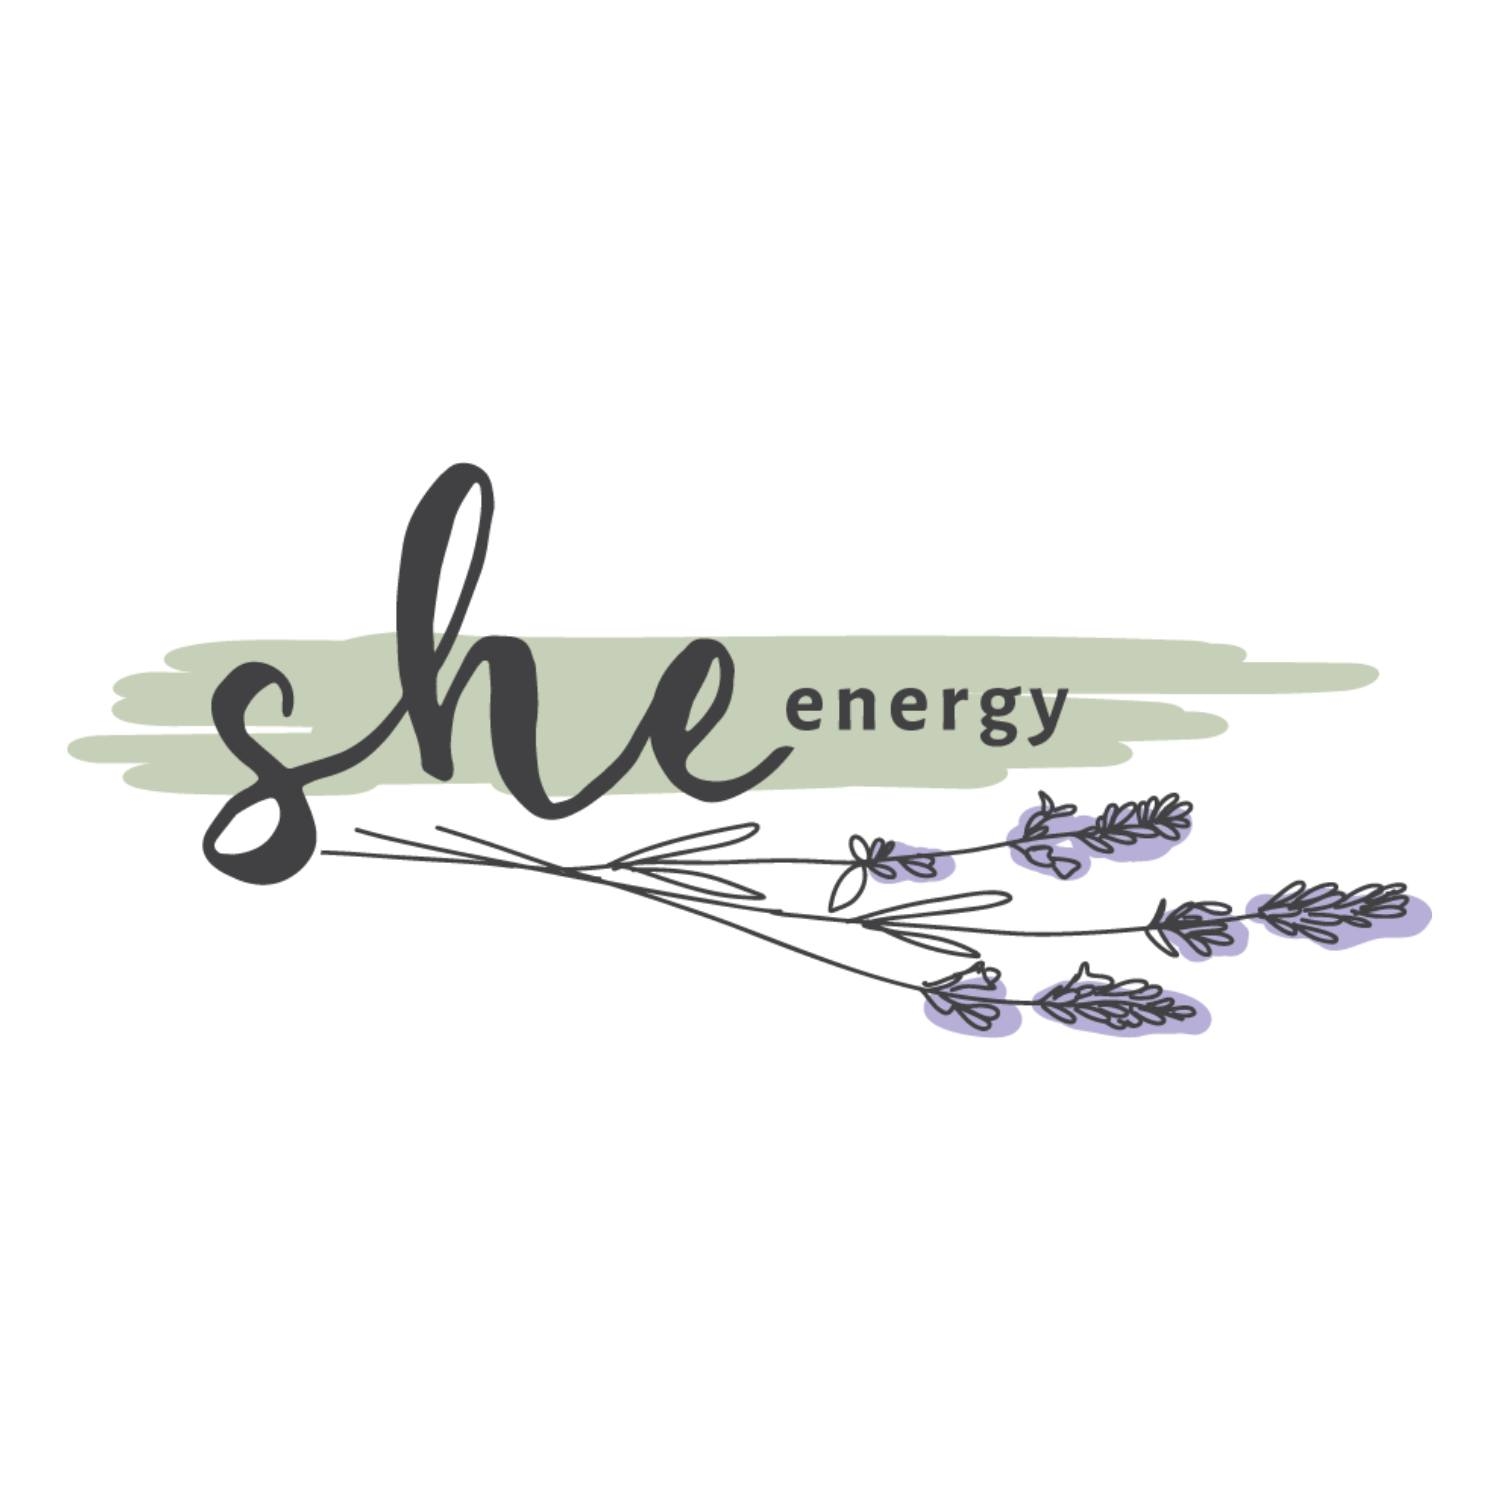 she_energy